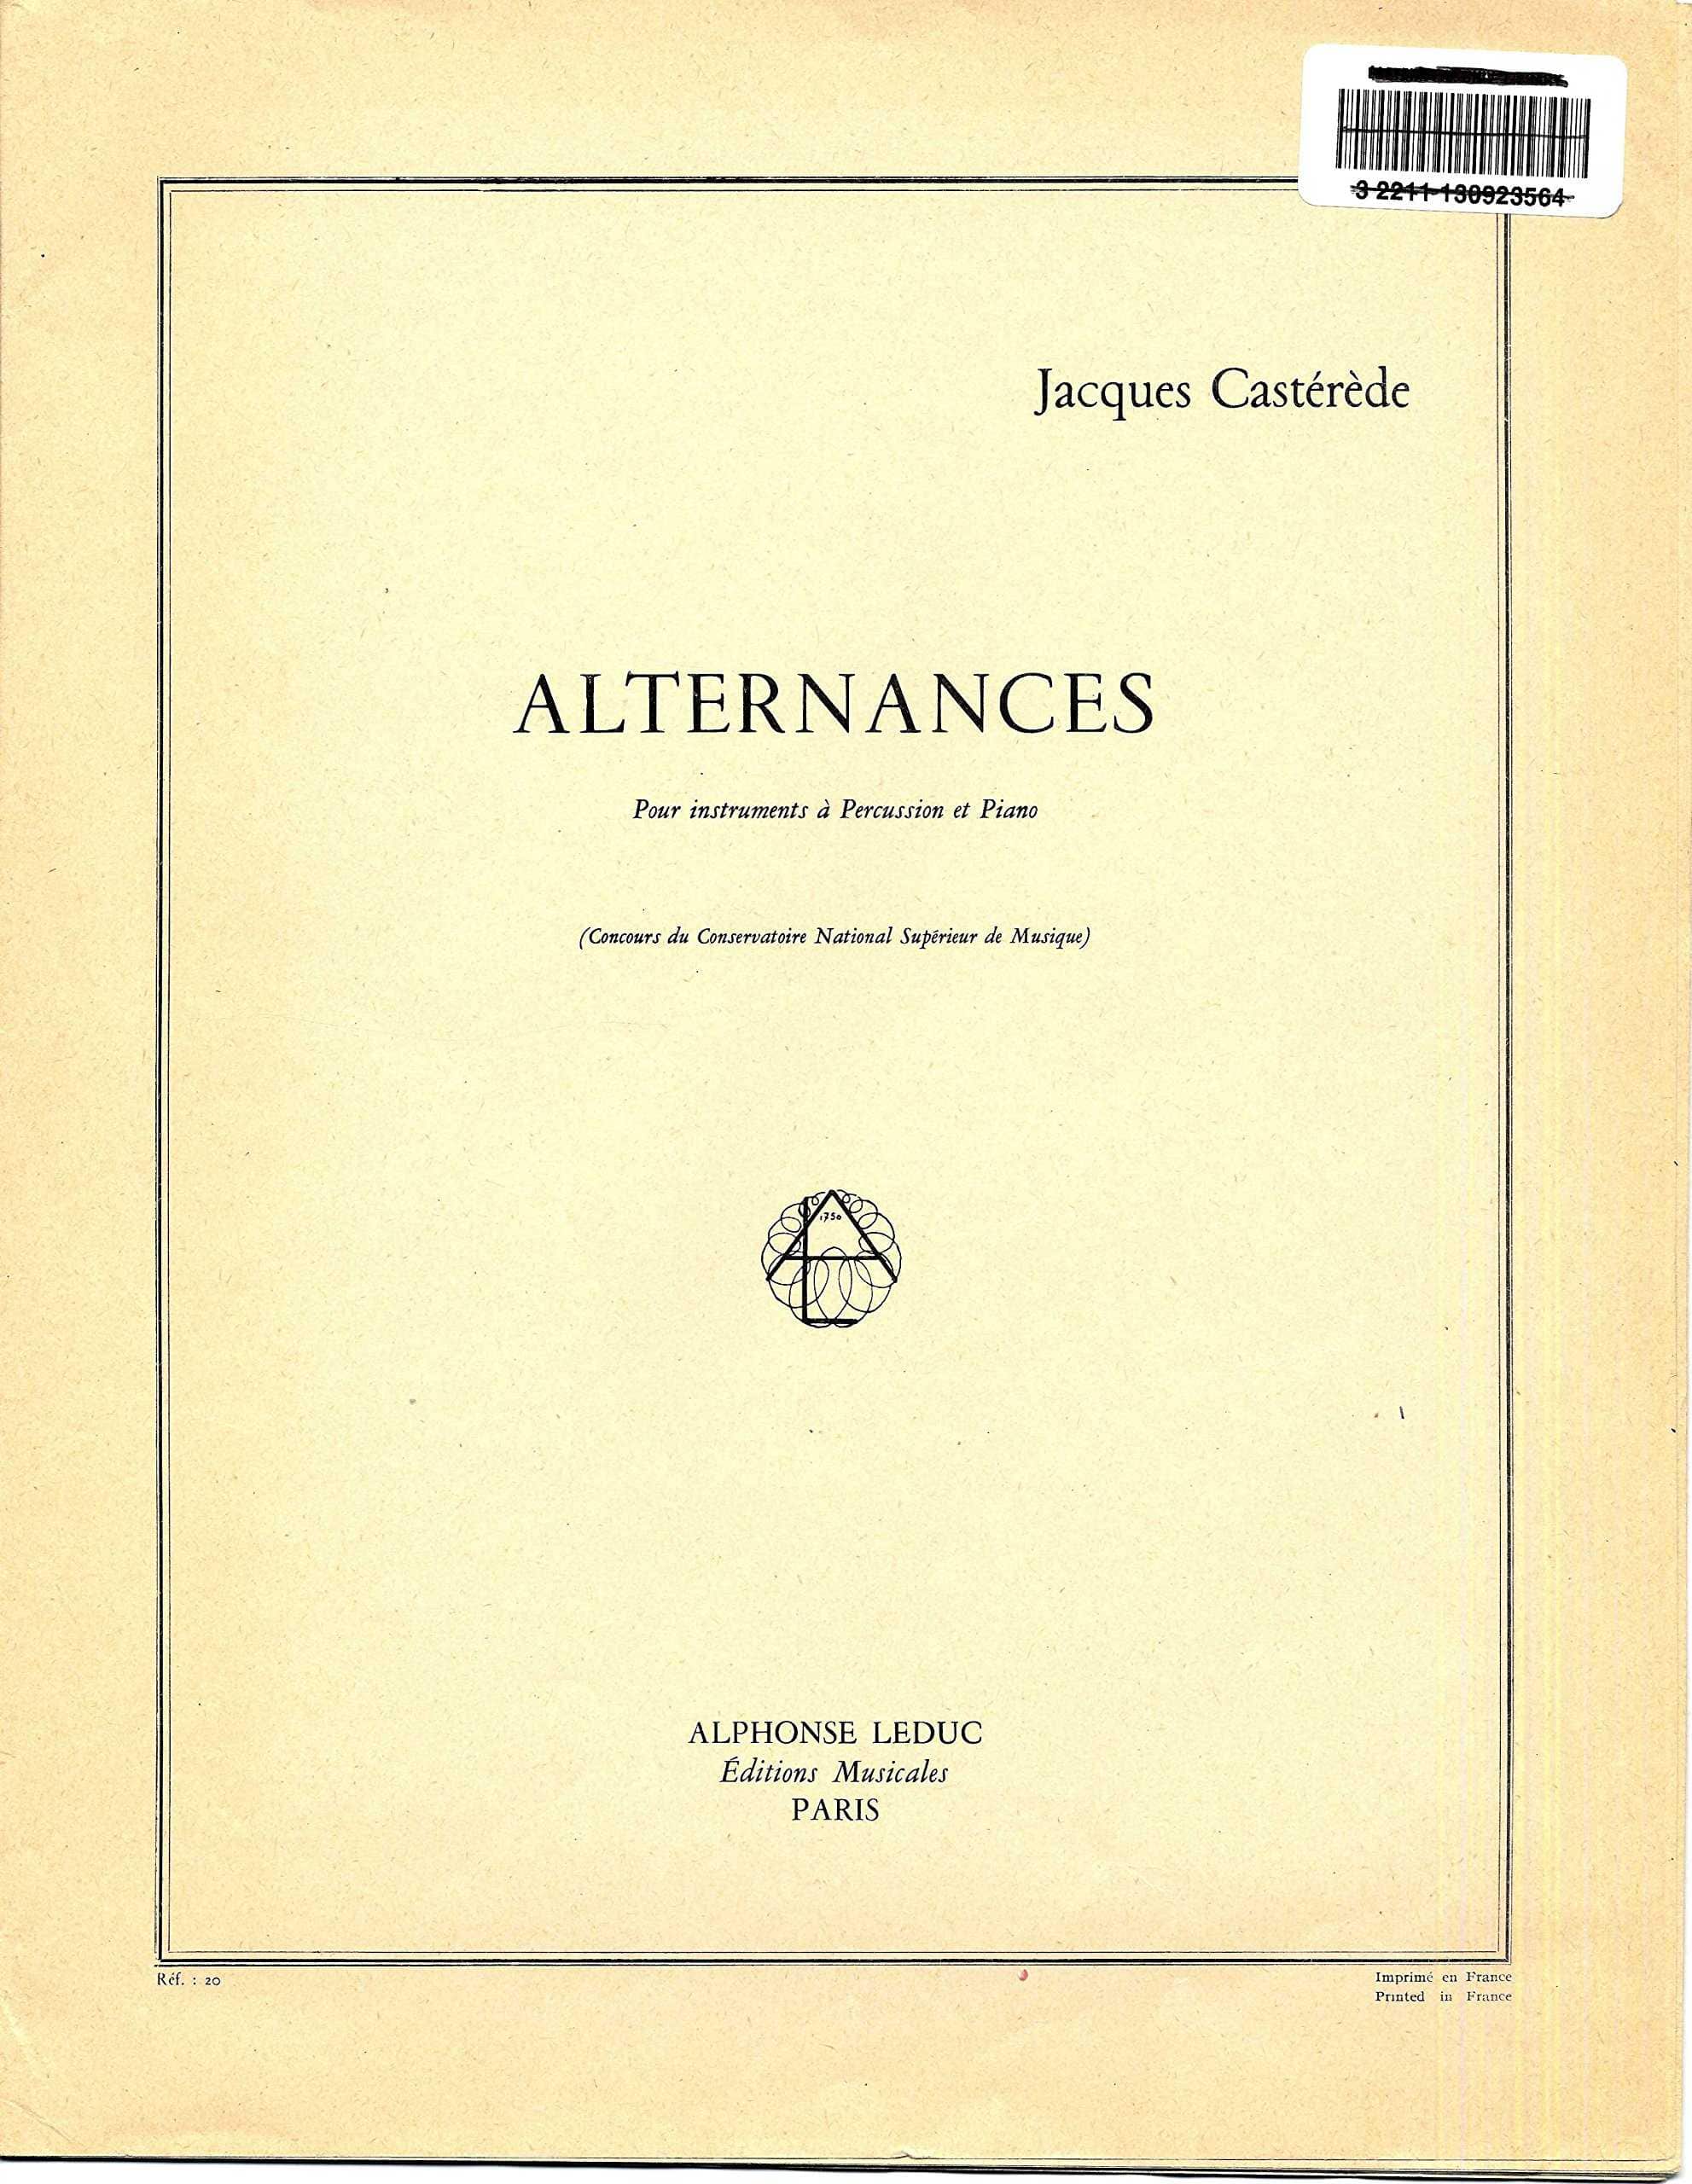 Alternances by Jacques Casterede